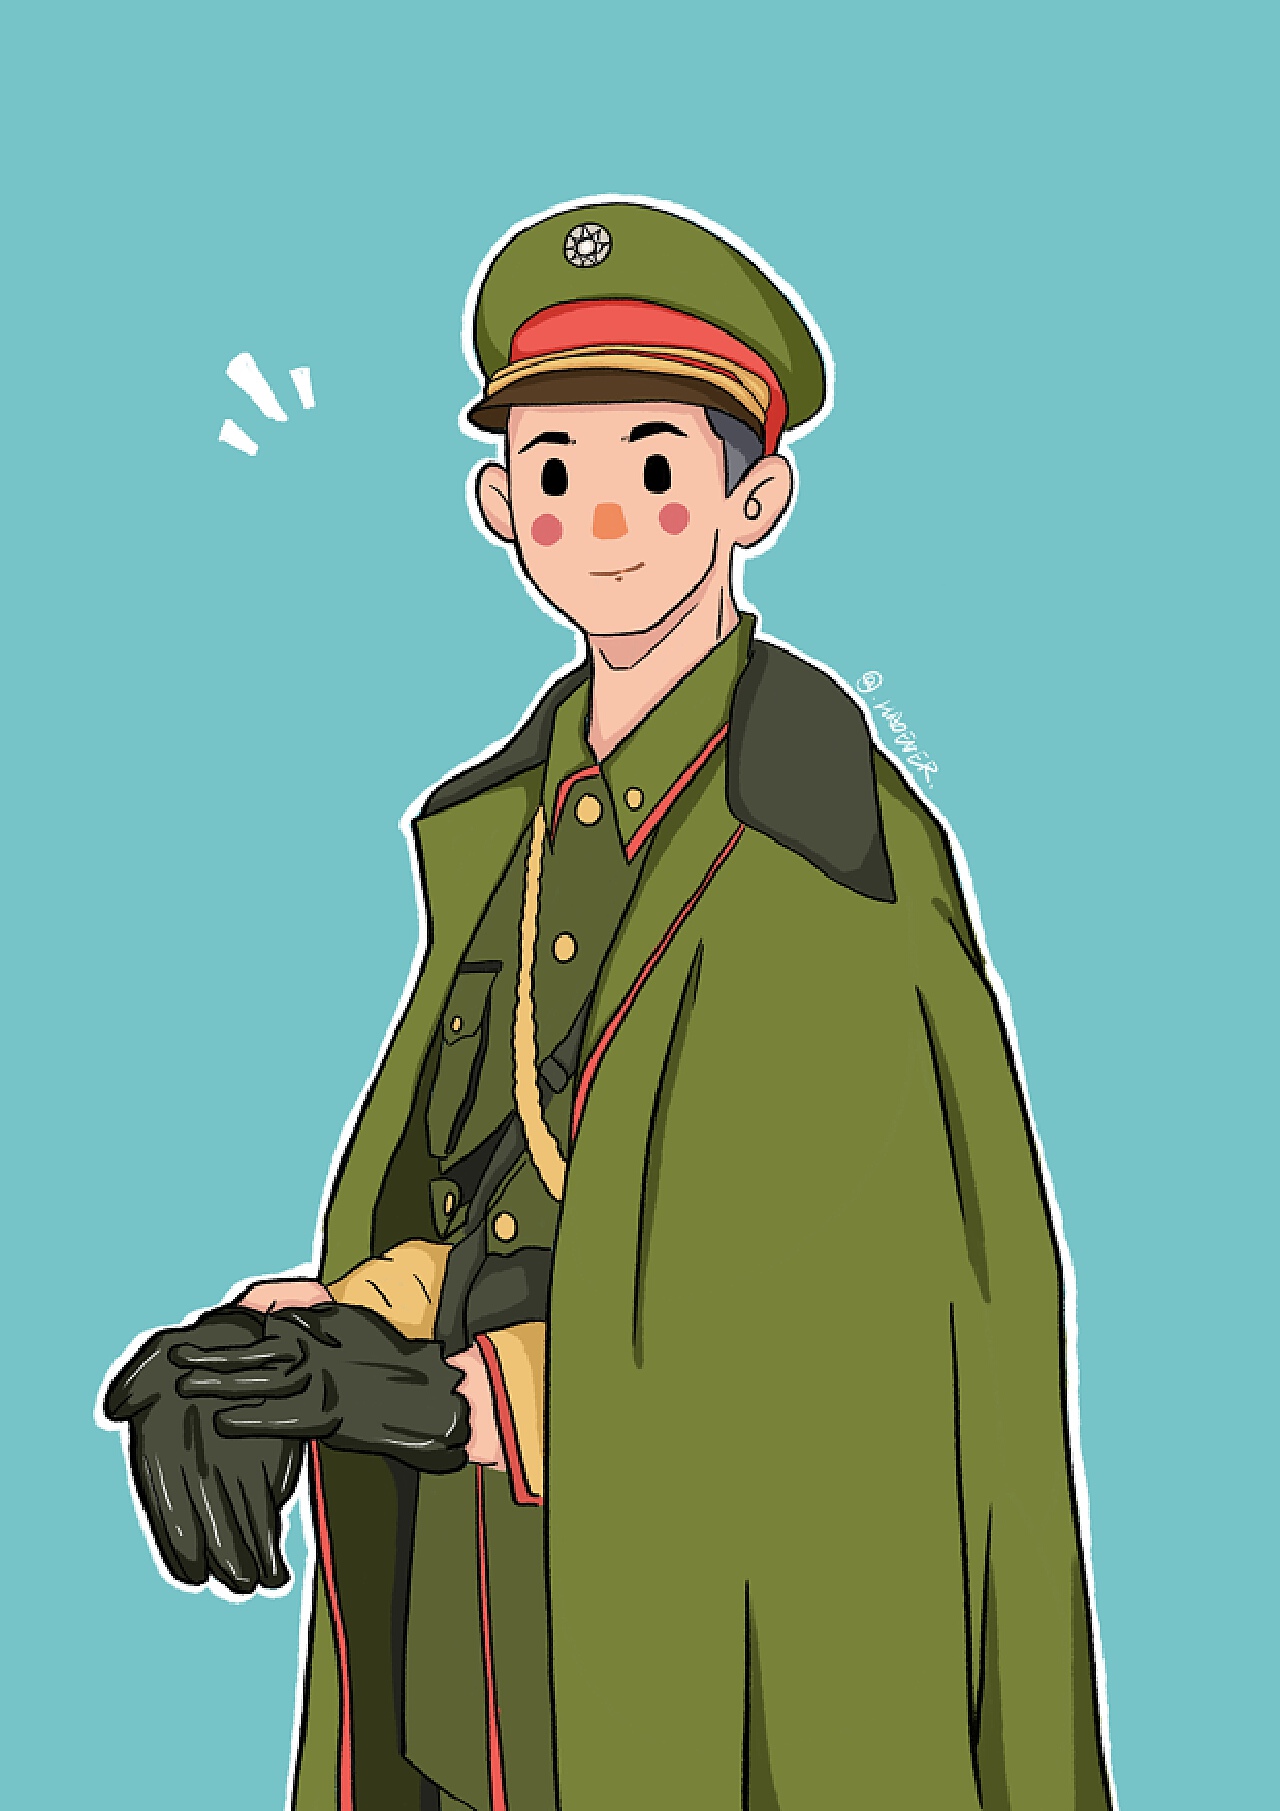 卡通q版敬禮的陸軍軍人PSD圖案素材免費下載 - Lovepik